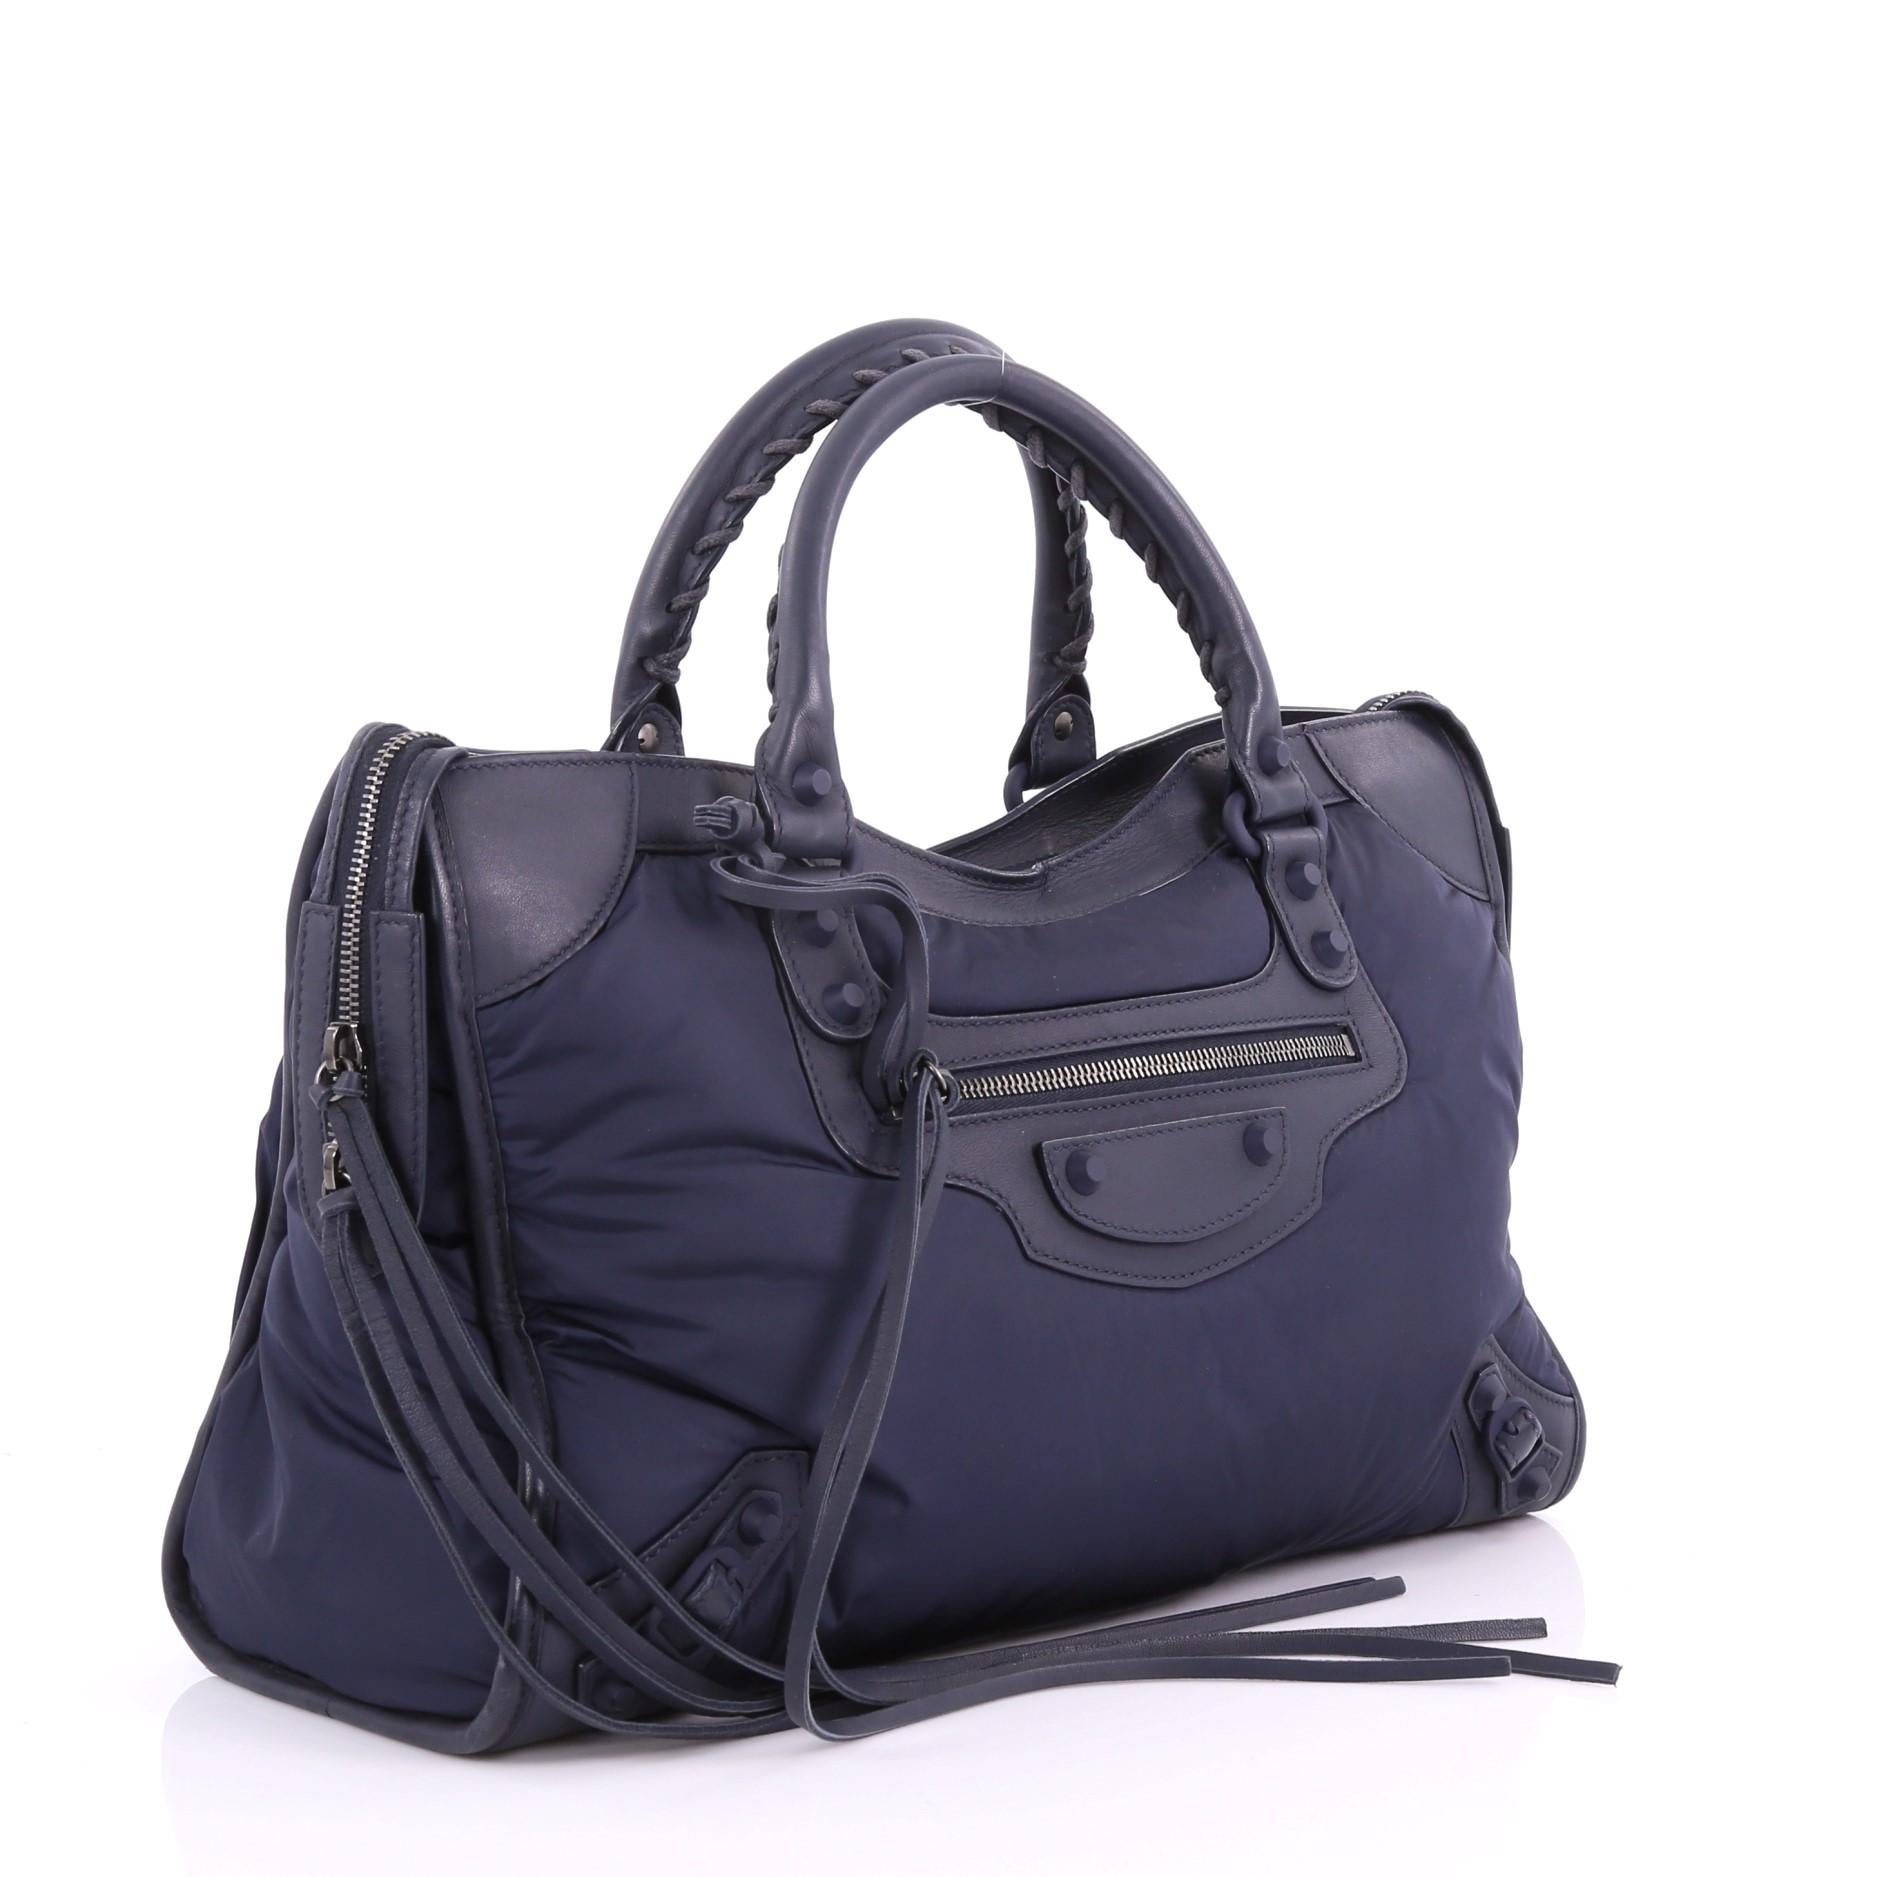 Black Balenciaga City Classic Studs Handbag Nylon Medium